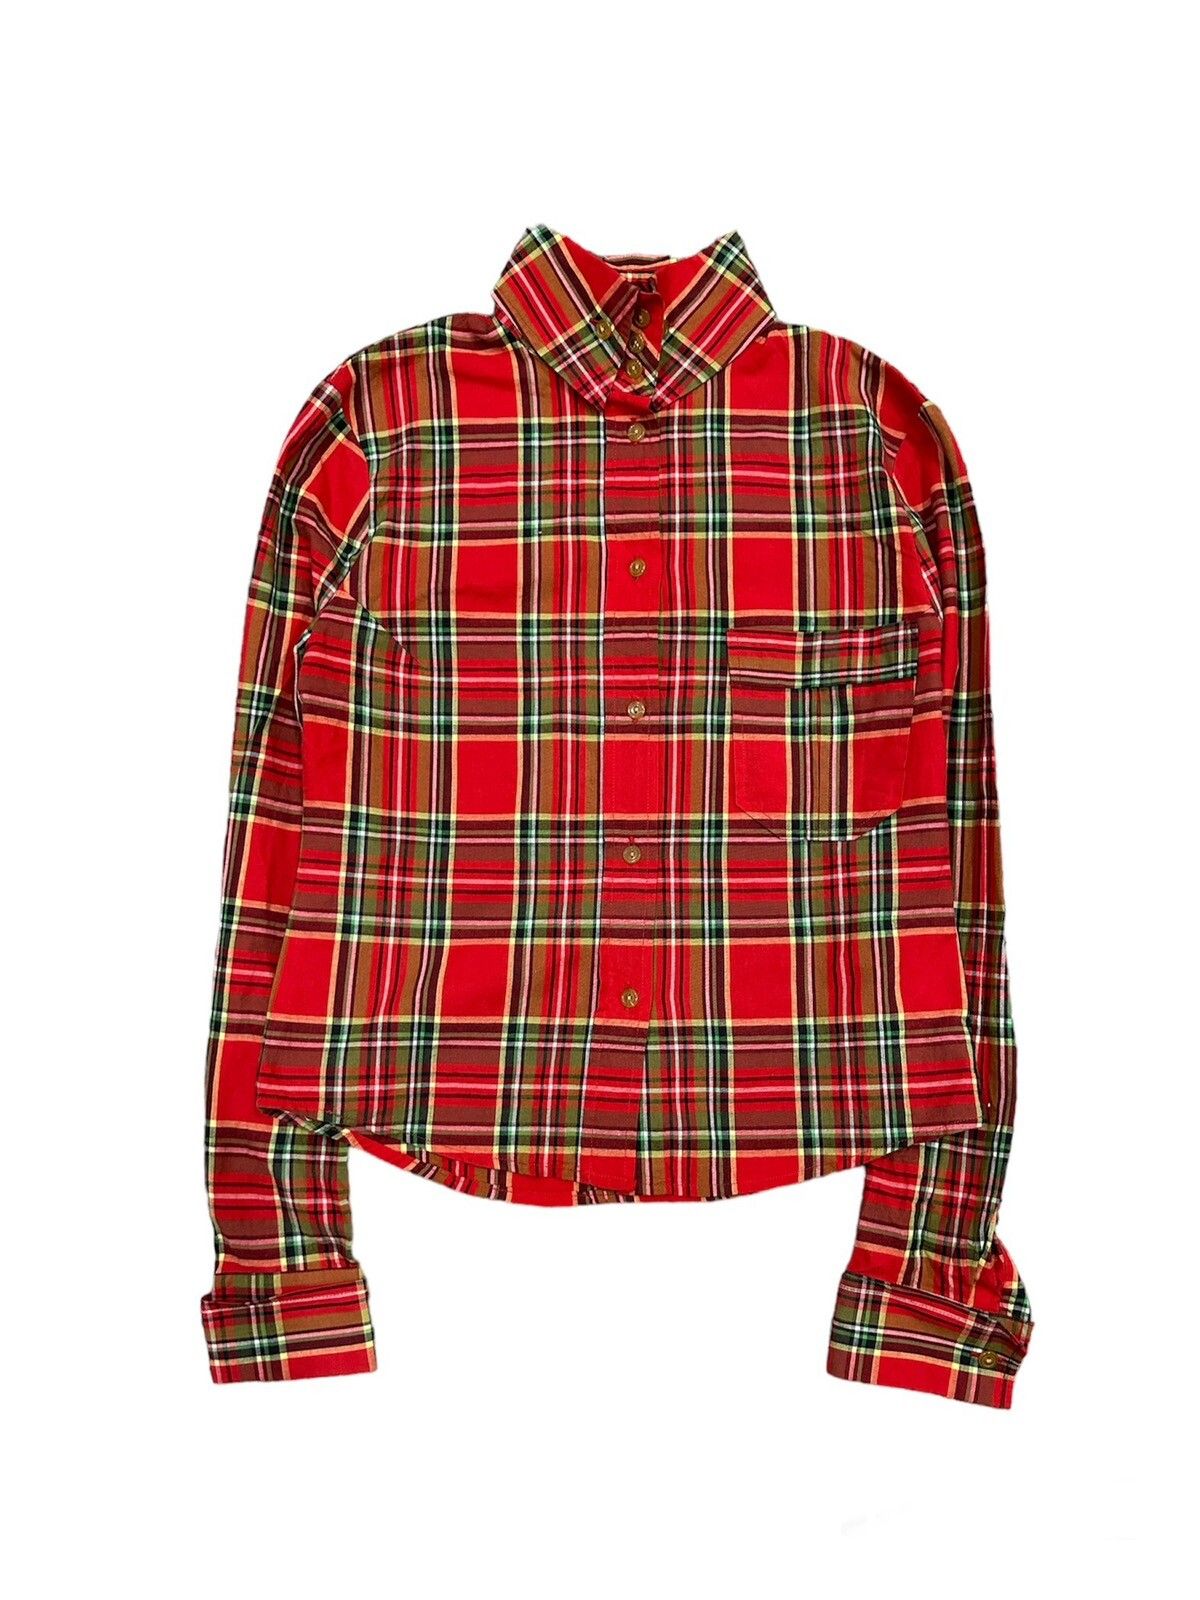 Vivienne Westwood OG Red Tartan Shirt - 3